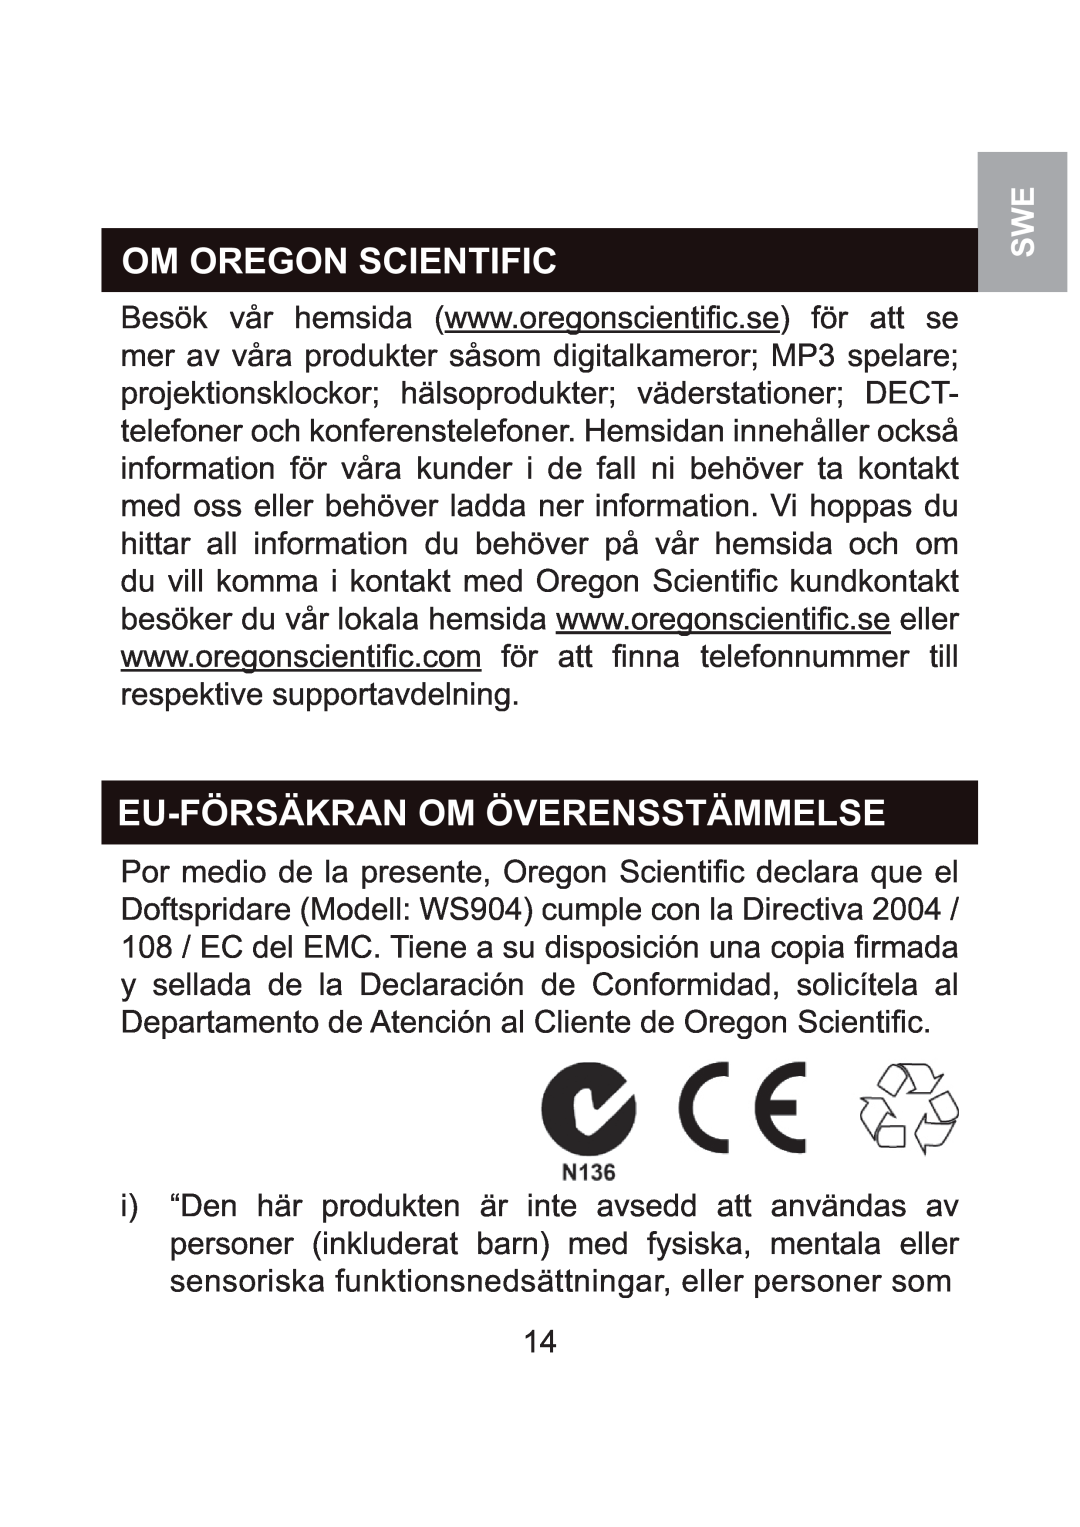 Oregon Scientific WS904 user manual Om Oregon Scientific, Eu-Försäkranom Överensstämmelse 